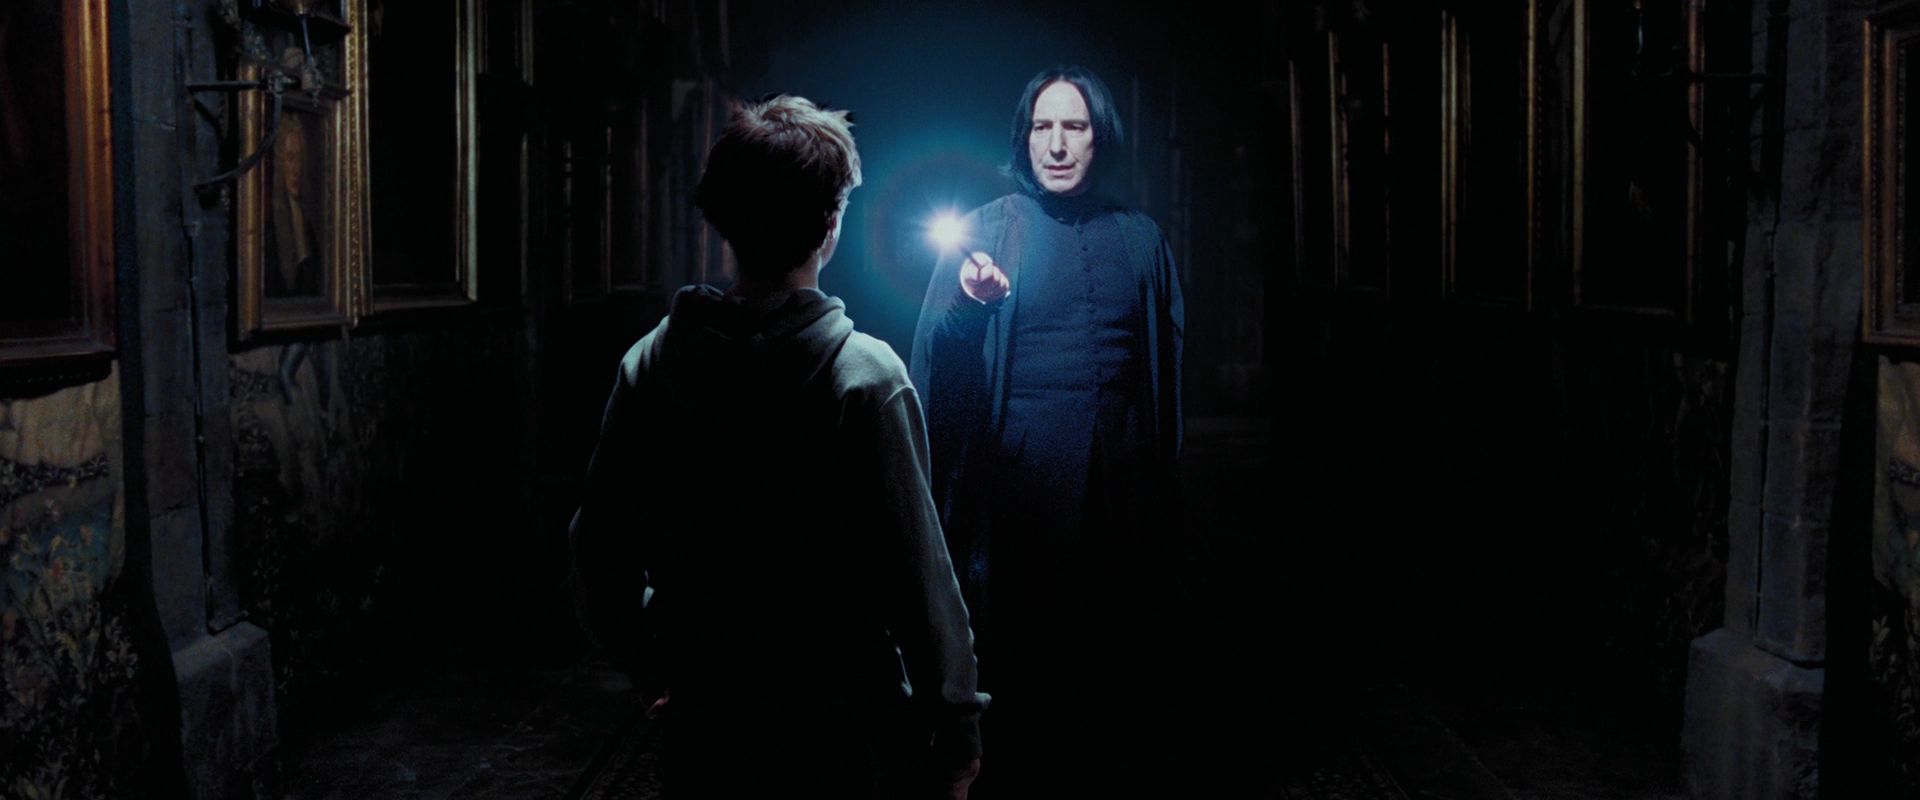 The Prisoner Of Azkaban Hd Wallpaper And Background - Harry And Snape Prisoner Of Azkaban - HD Wallpaper 